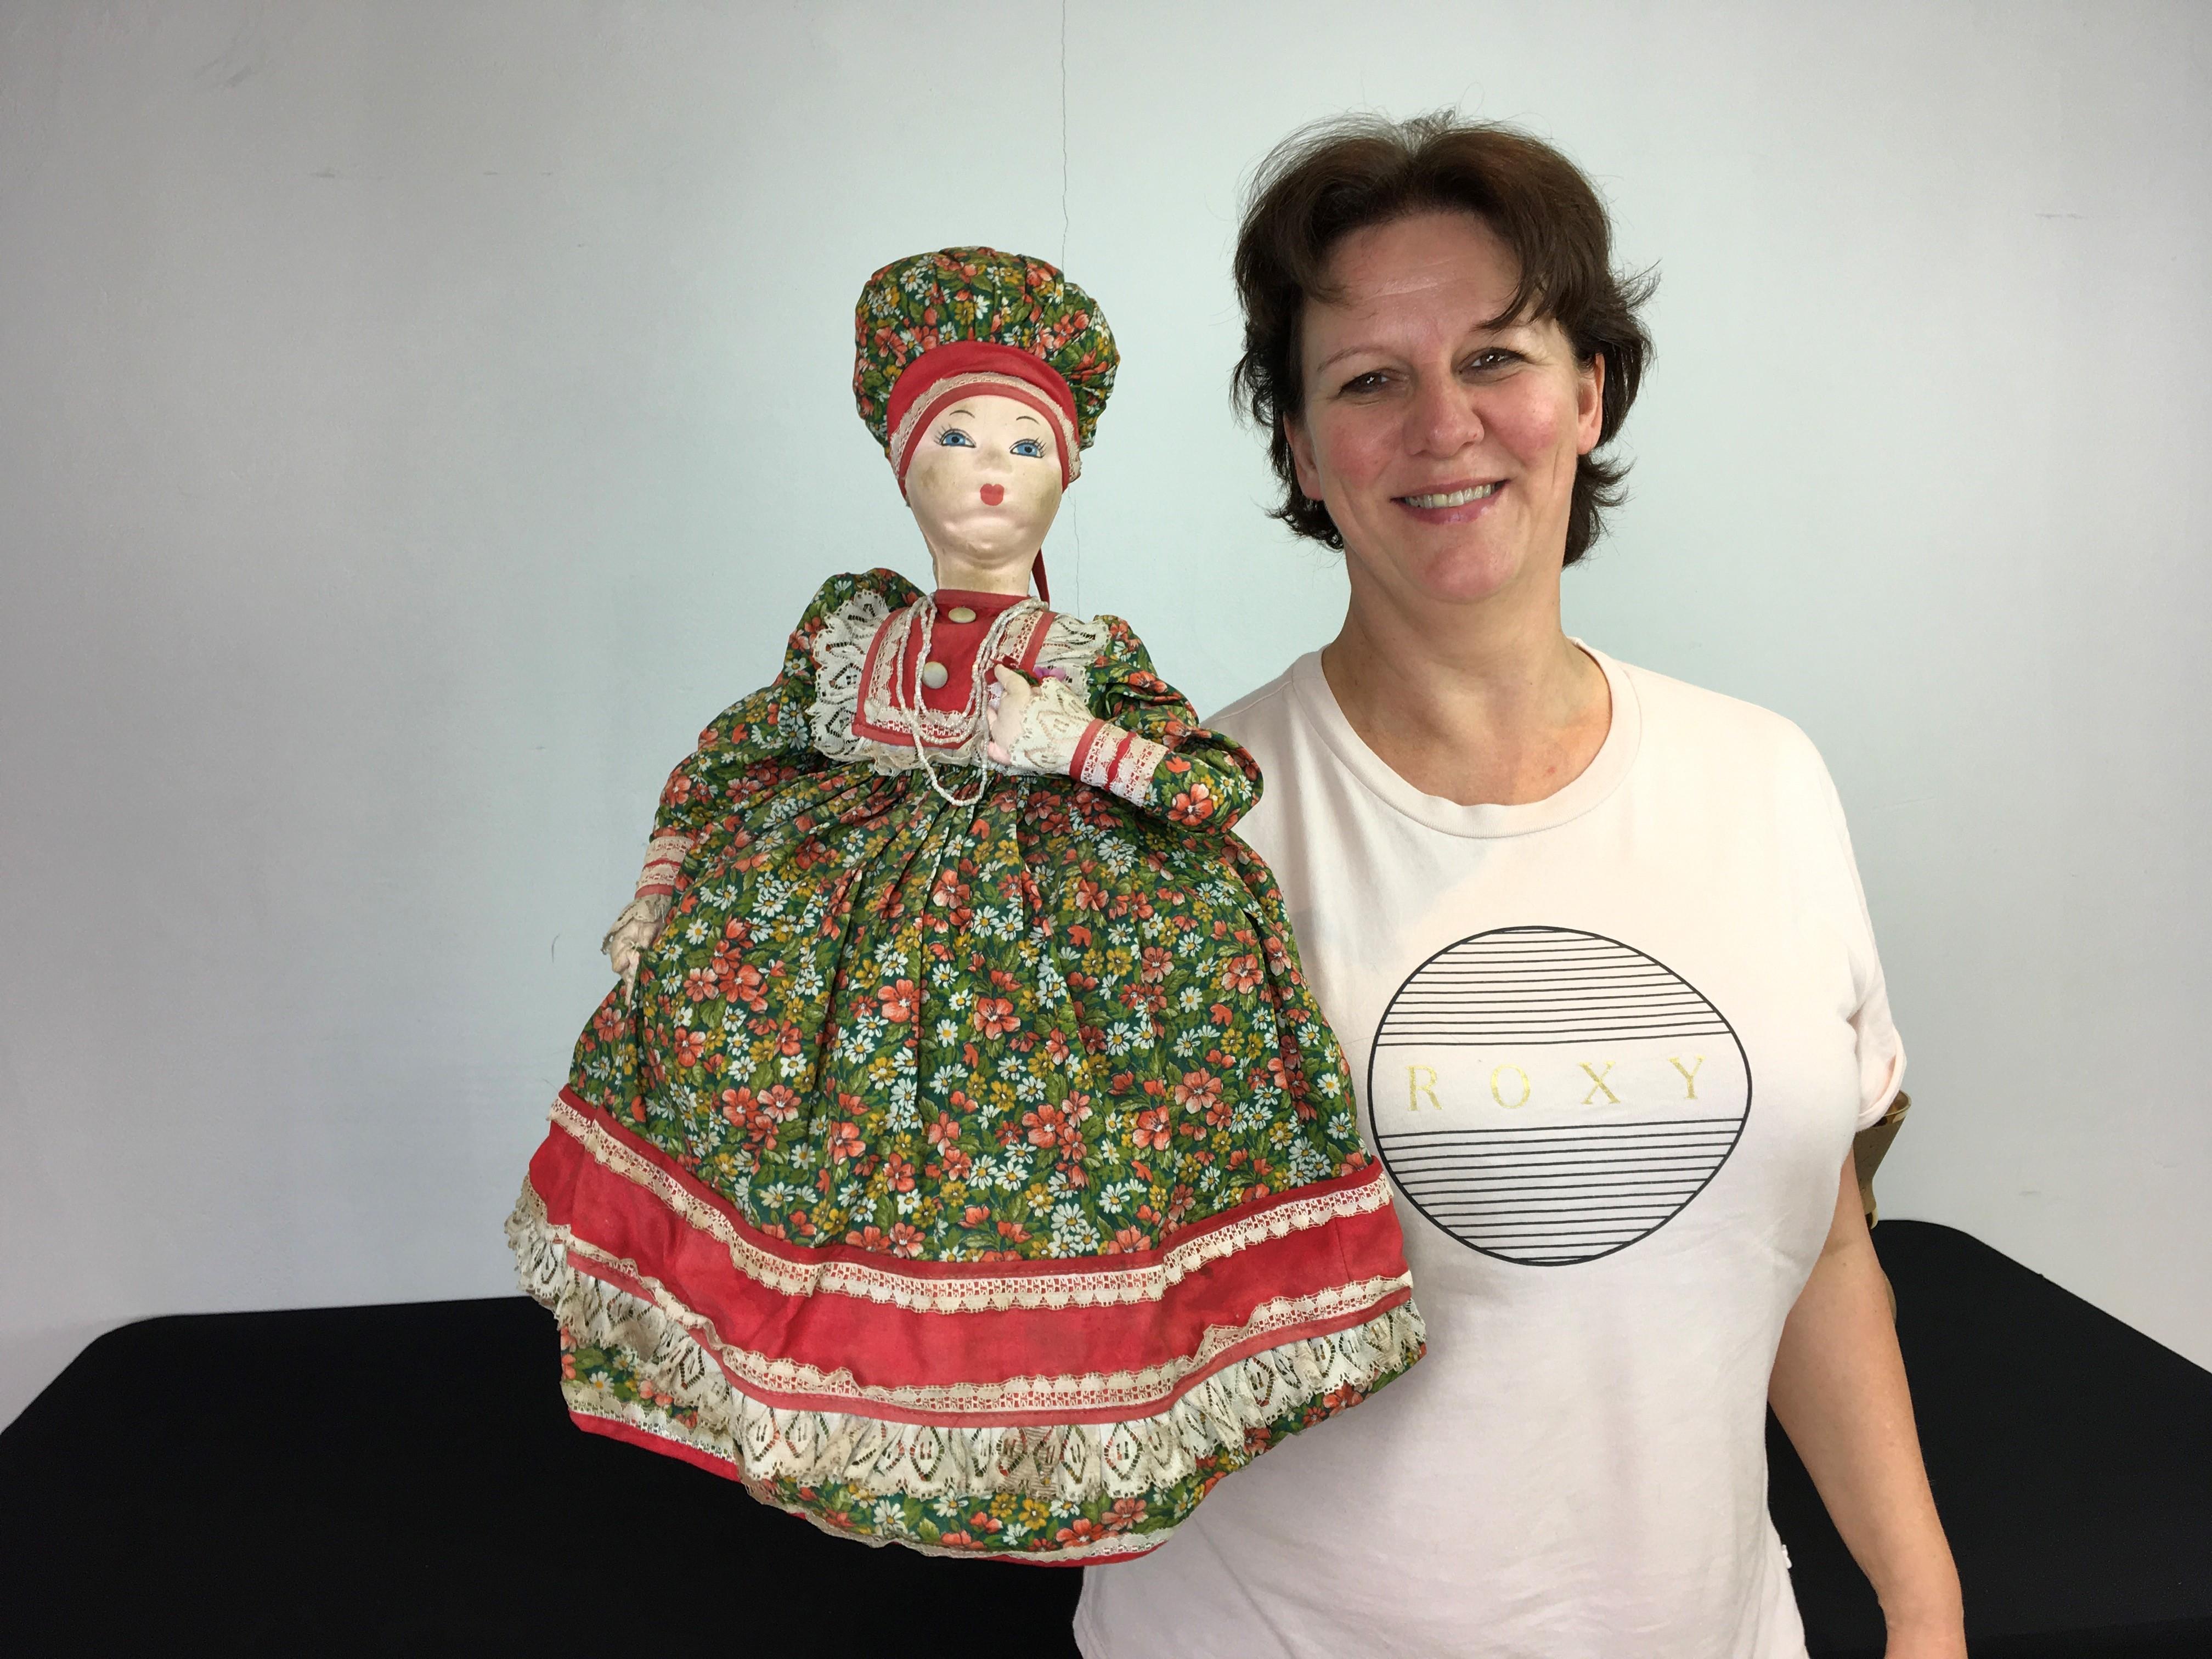 Vintage russische Samowar Puppe Teekanne gemütlich oder Samowar Teekanne Abdeckung. 
Diese große, handgefertigte Puppe hat einen geformten Stoffkopf mit aufgemalten Augen, roten Lippen und einem großen grünen Kleid mit vielen Blumen und